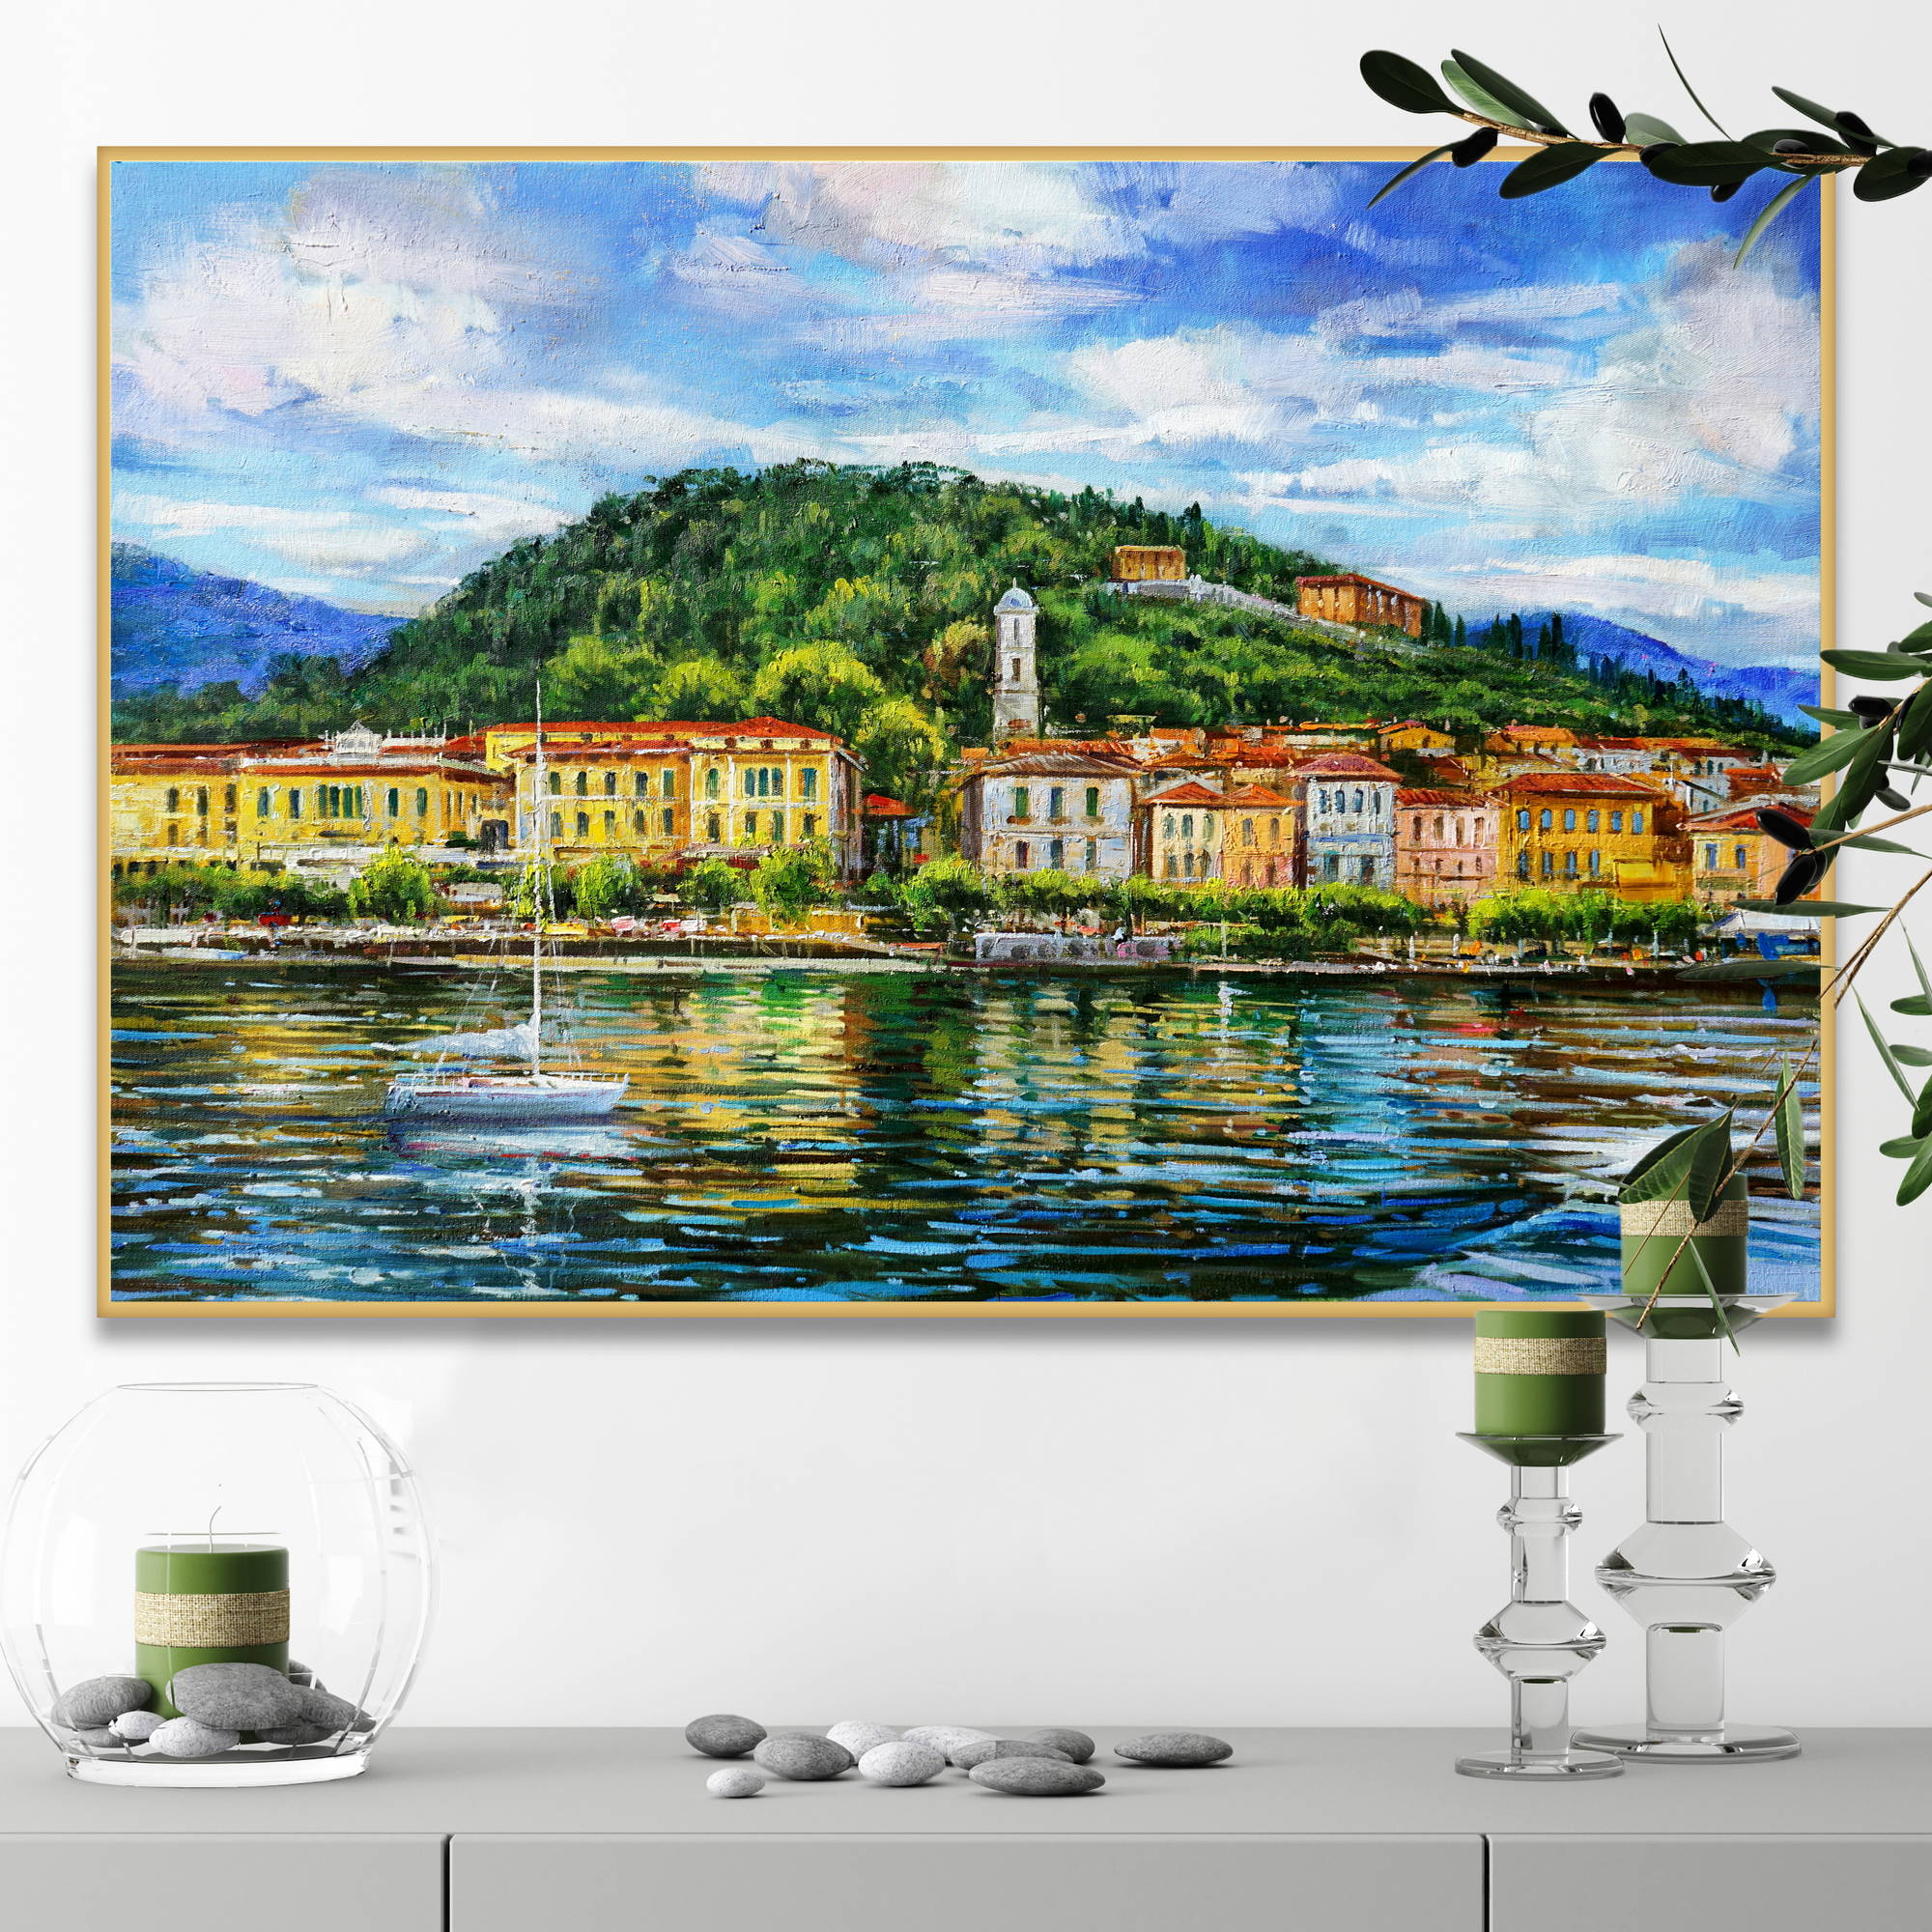 Dipinto del pittoresco borgo di Bellagio sul lago di Como